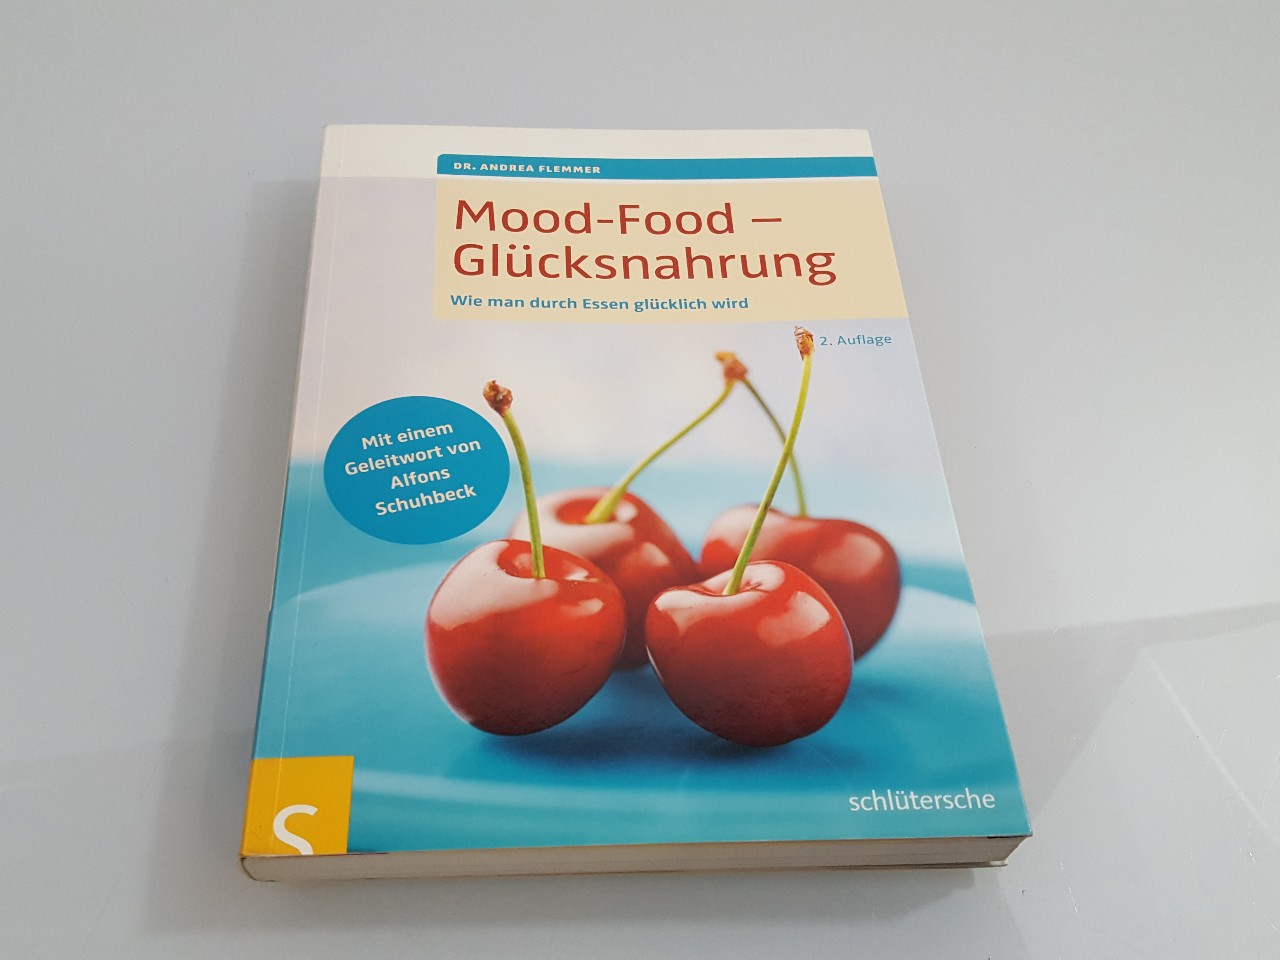 Mood-Food - Glücksnahrung : wie man durch Essen glücklich wird / Andrea Flemmer. [Mit einem Geleitw. von Alfons Schuhbeck] - Flemmer, Andrea